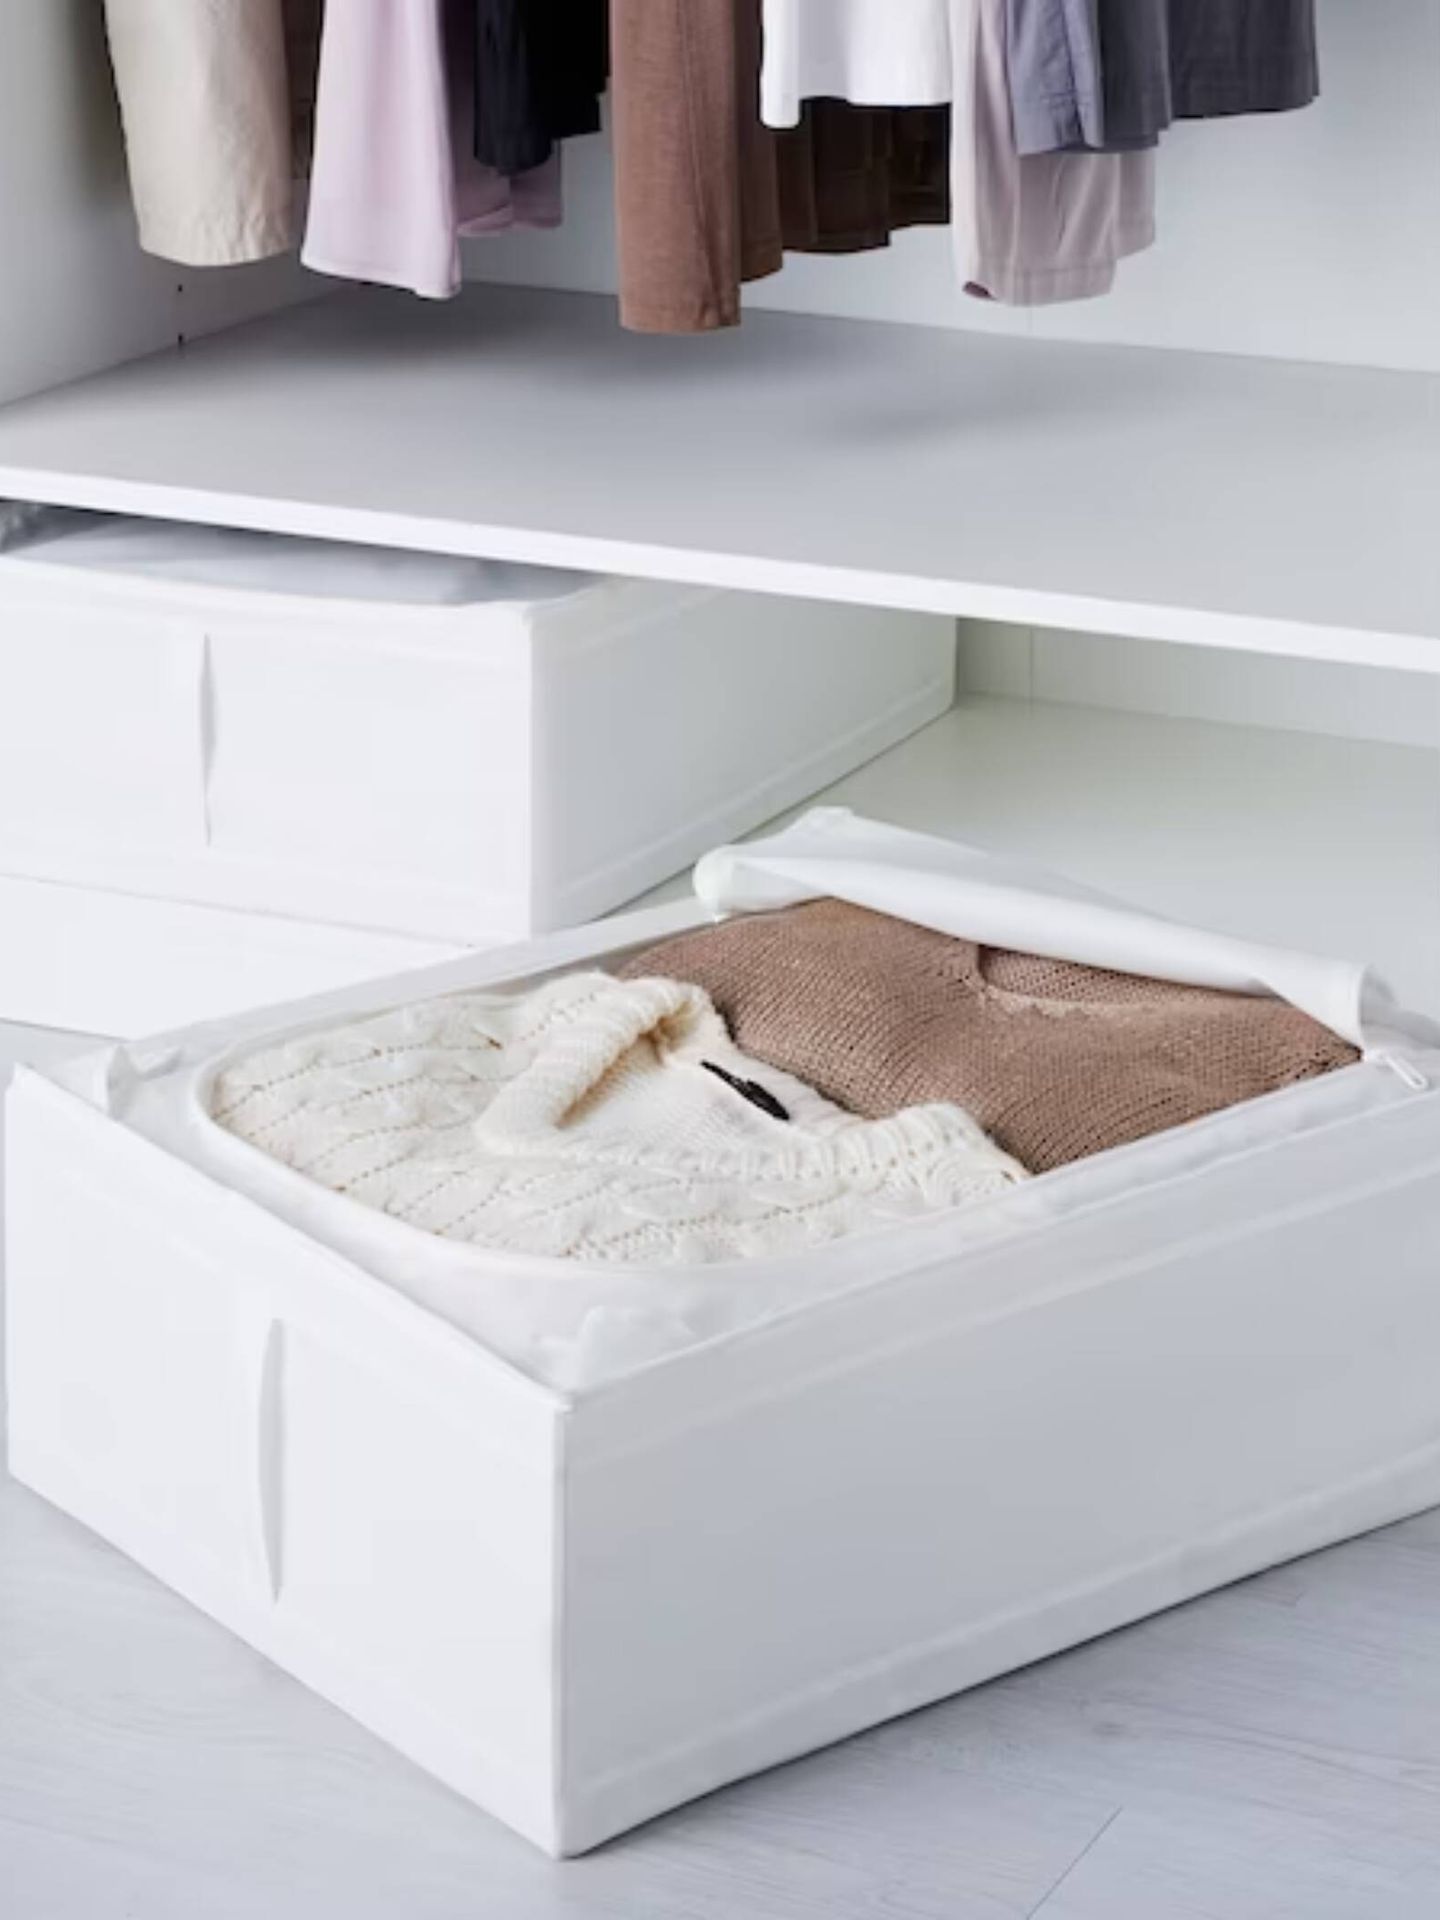 Perchas y cajas para un armario ordenado. (Cortesía/Ikea)